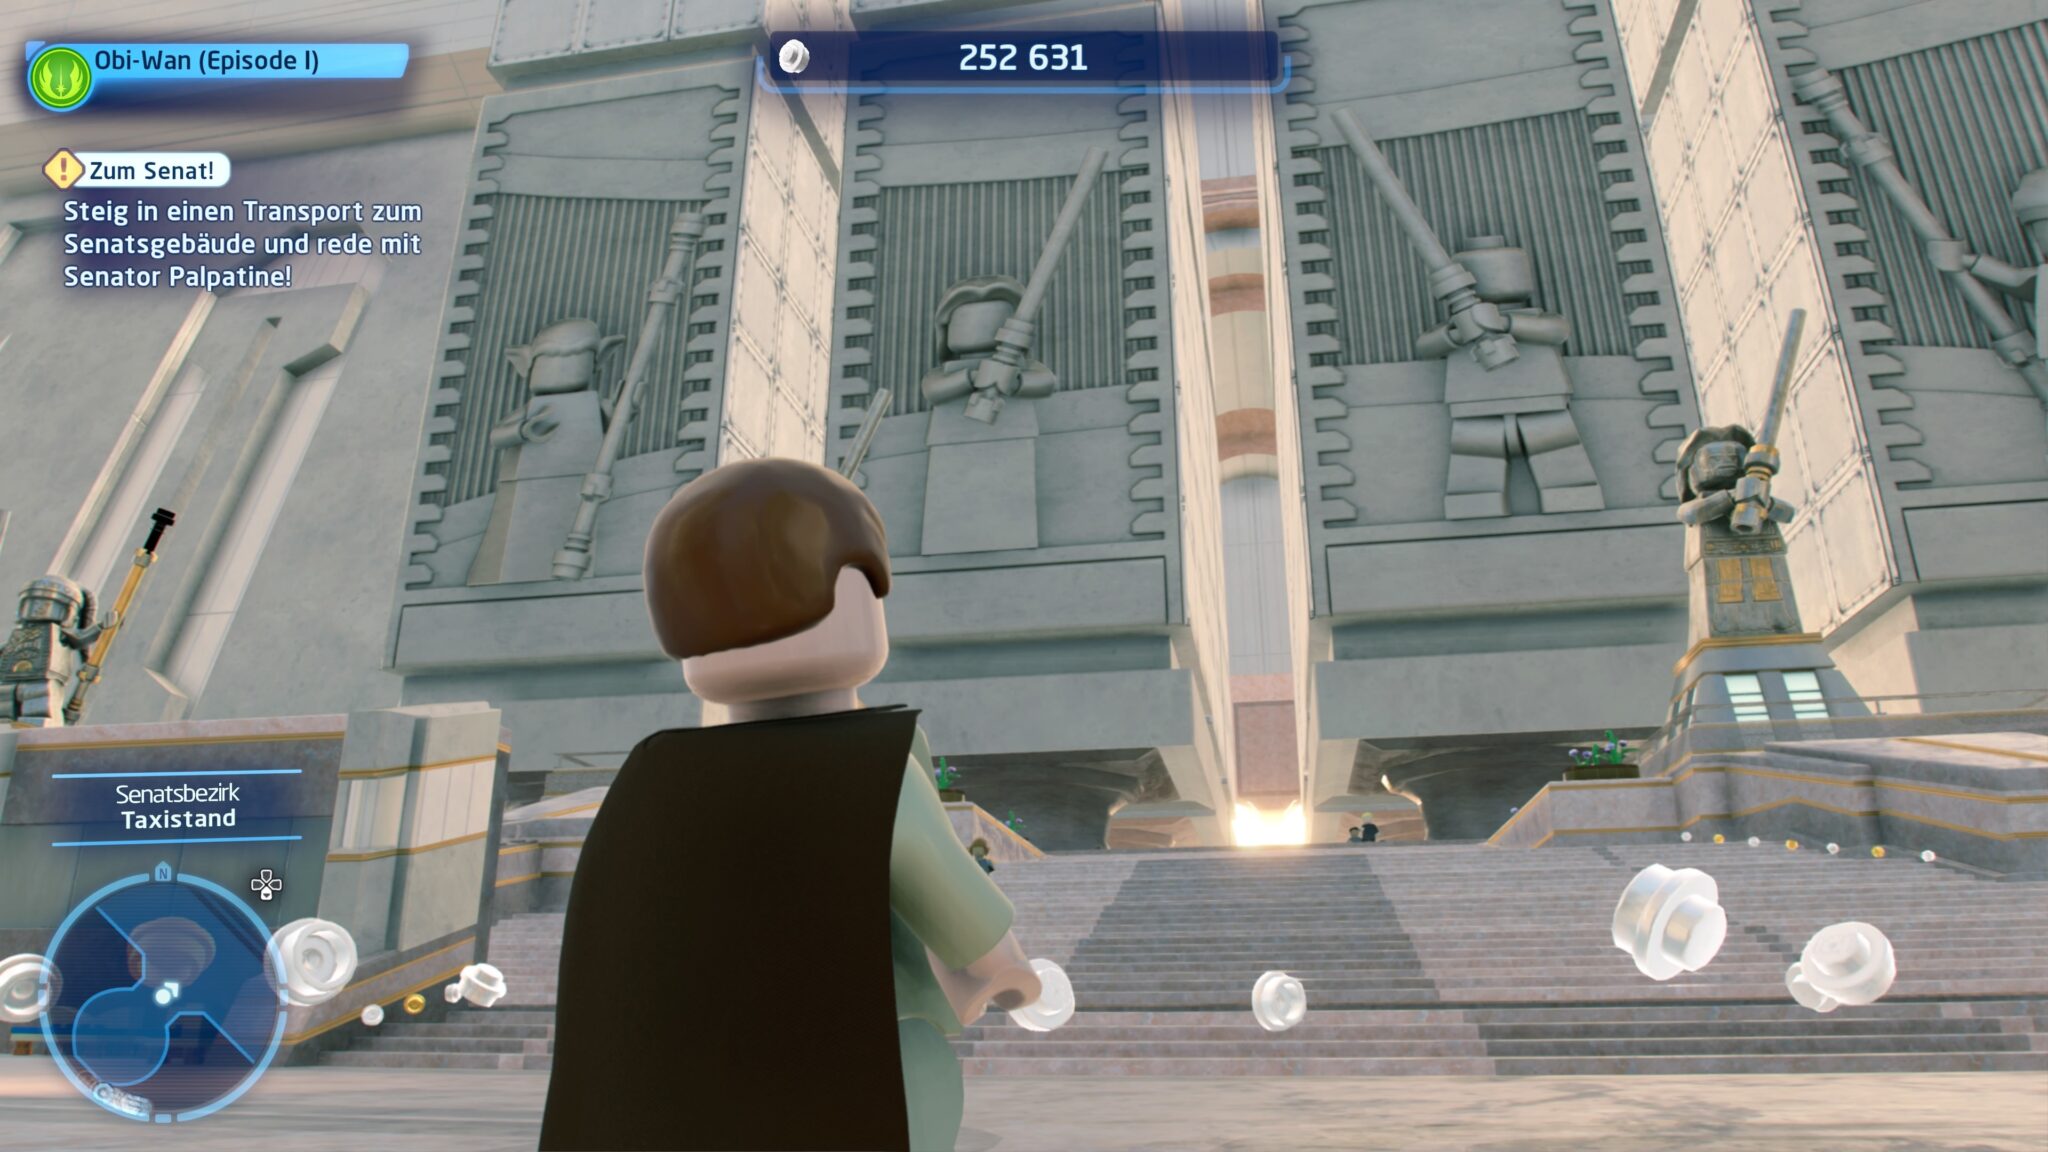 Anche con le figure Lego, il Tempio Jedi sembra davvero impressionante dall'esterno.